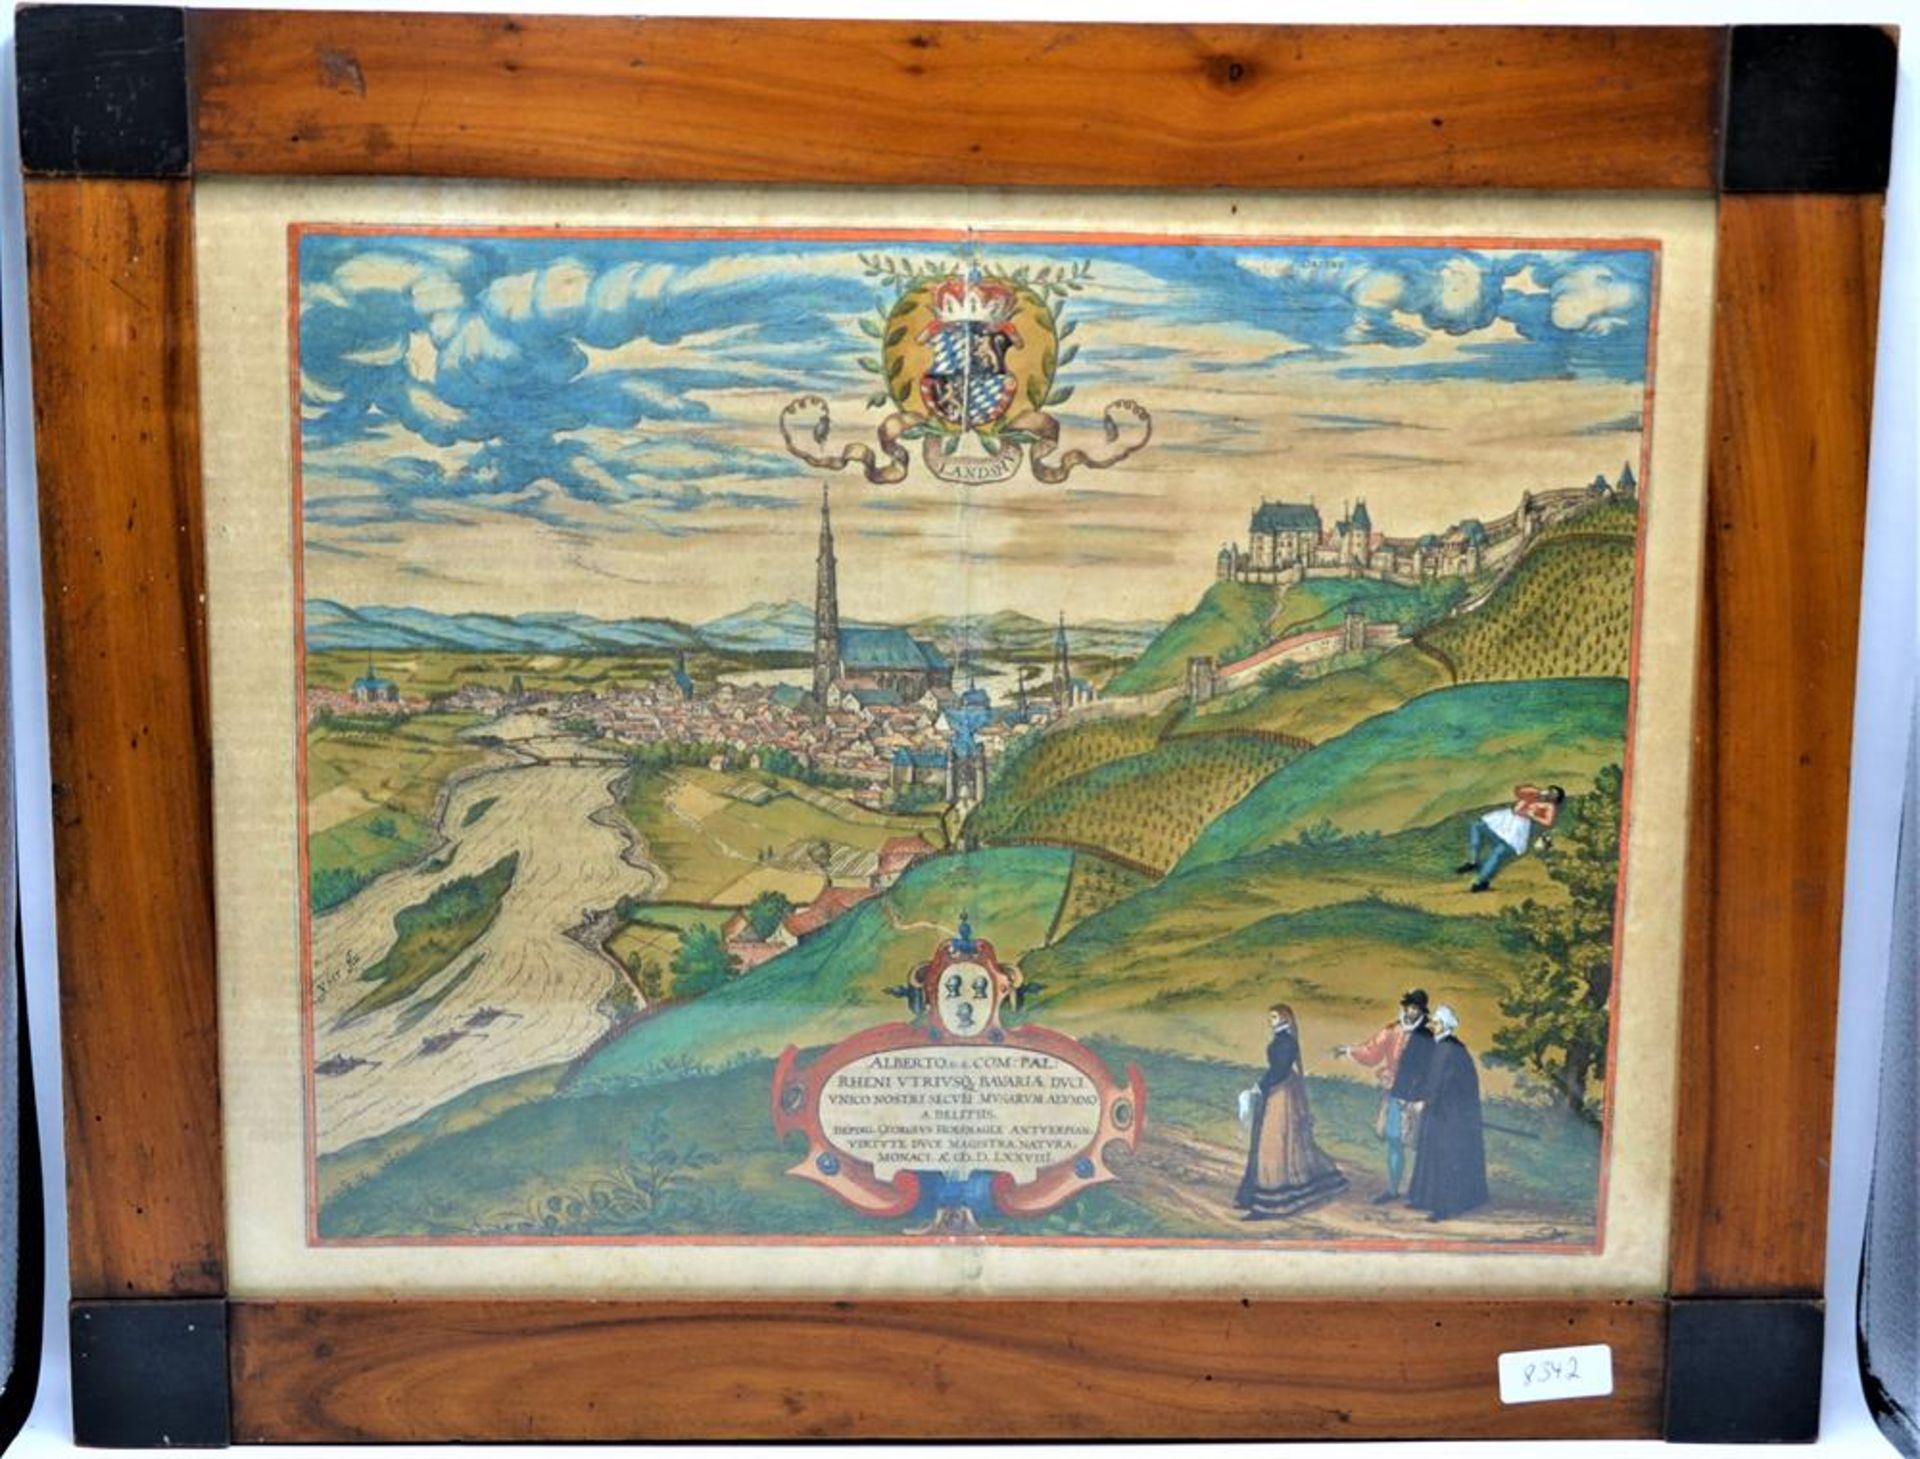 Kupferstich Landshut koloriert, alte Landkarte Landshut nach Georg Hoefnagel (1542-1600) aus Braun/